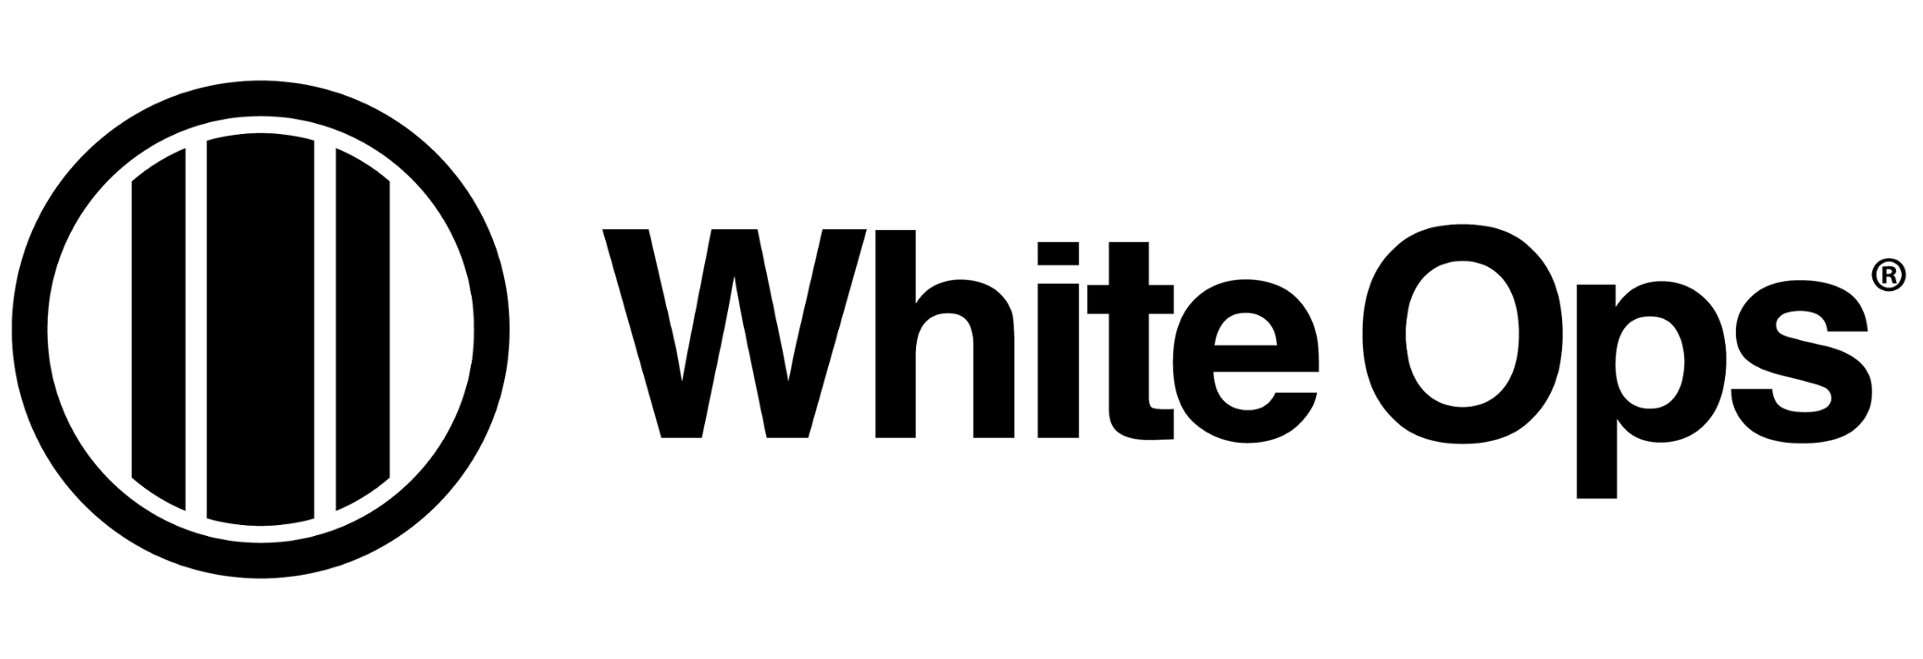 wo-black-logo.png